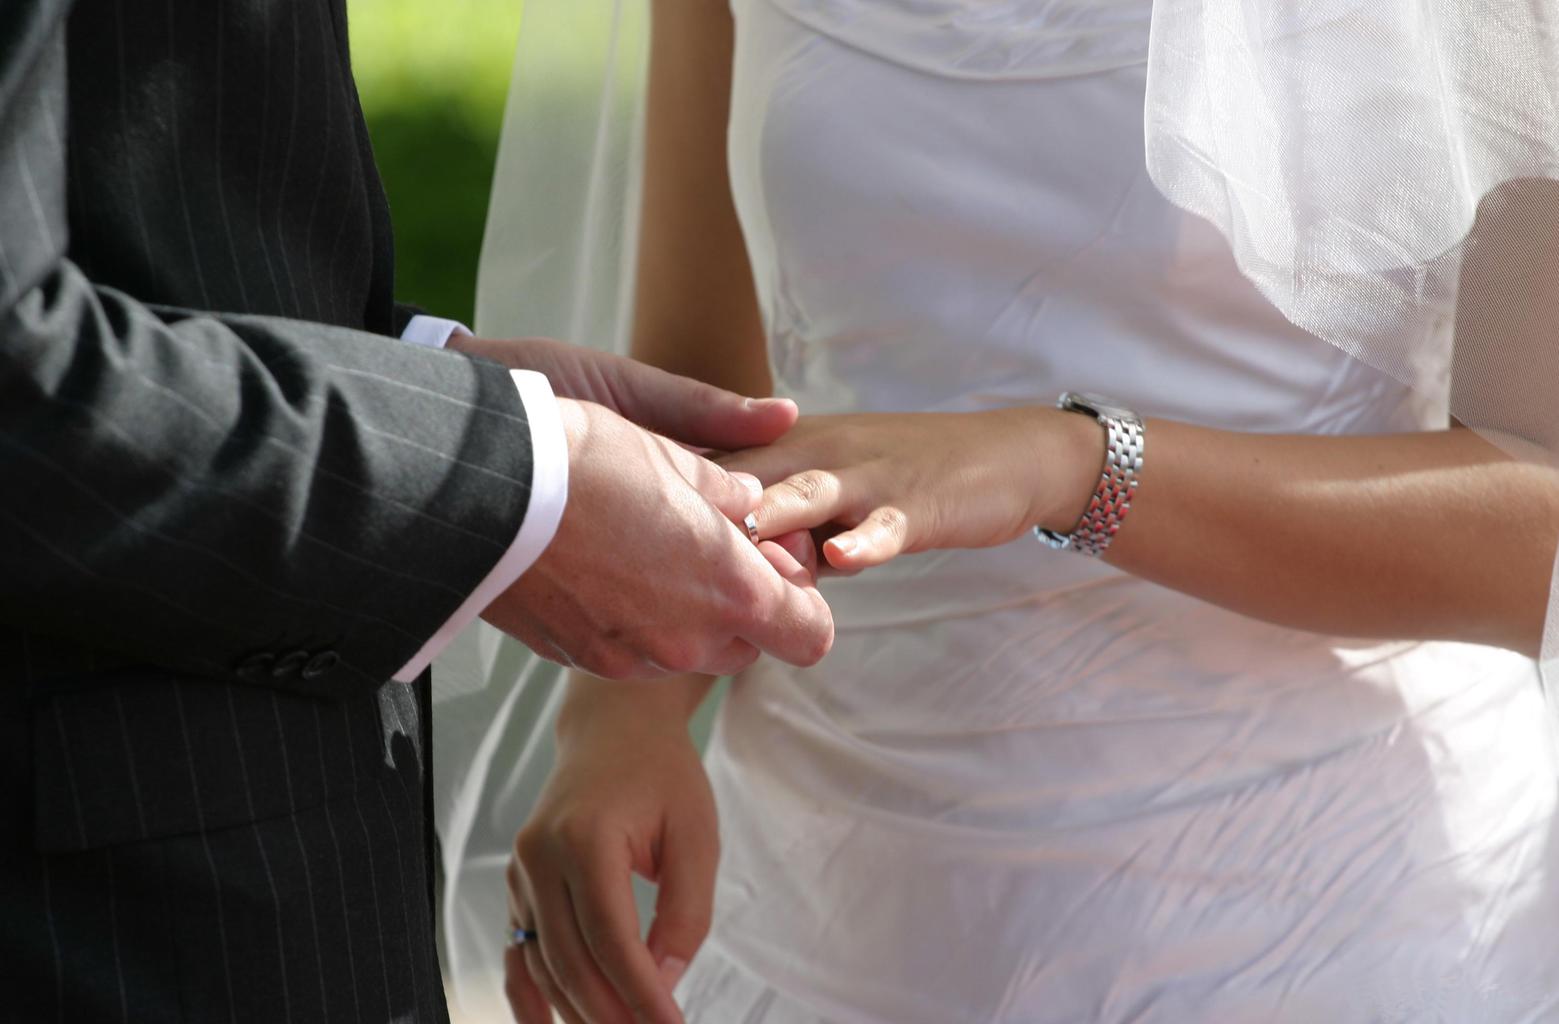 Ubezpieczenia ślubne – USA mówi im „tak”